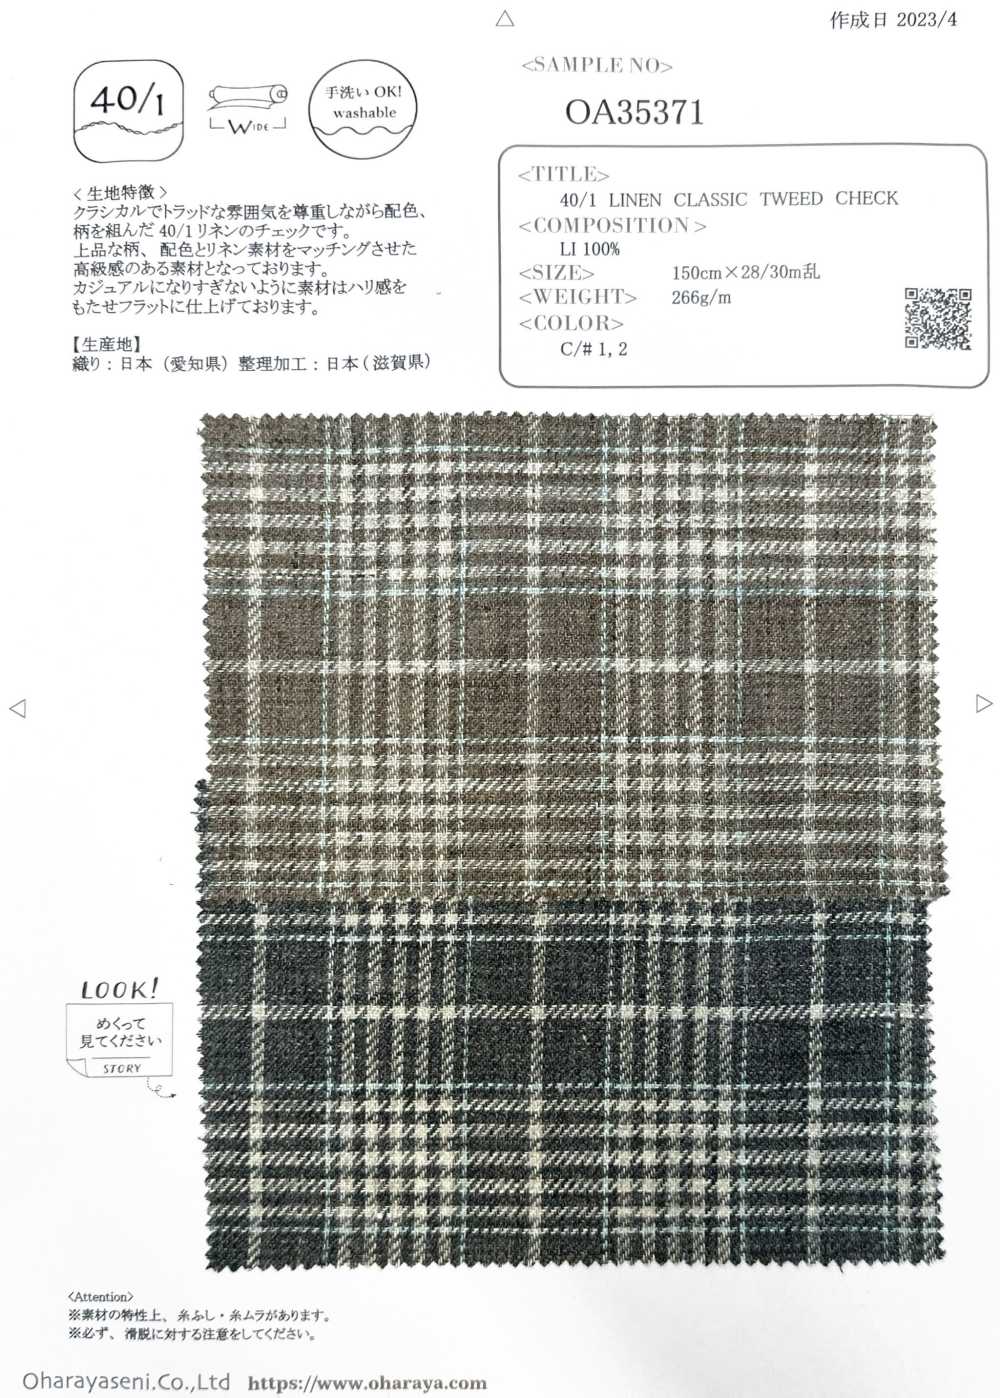 OA35371 40/1 亞麻經典花呢格紋[面料] 小原屋繊維